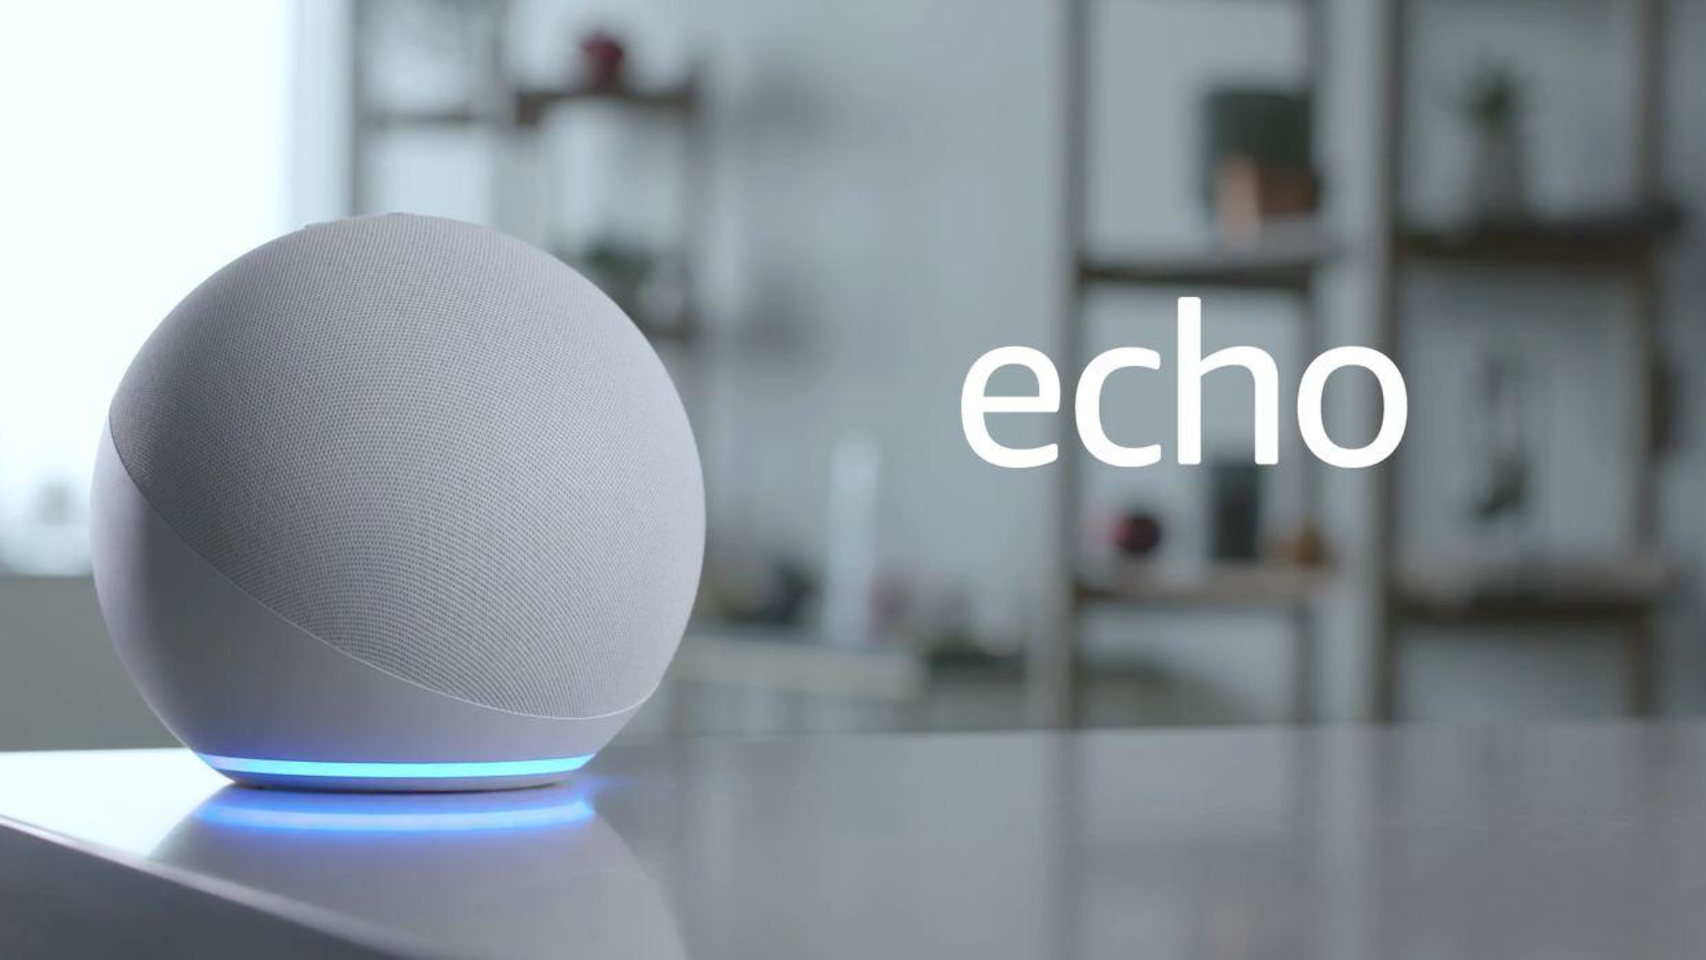 Nuevo Amazon Echo